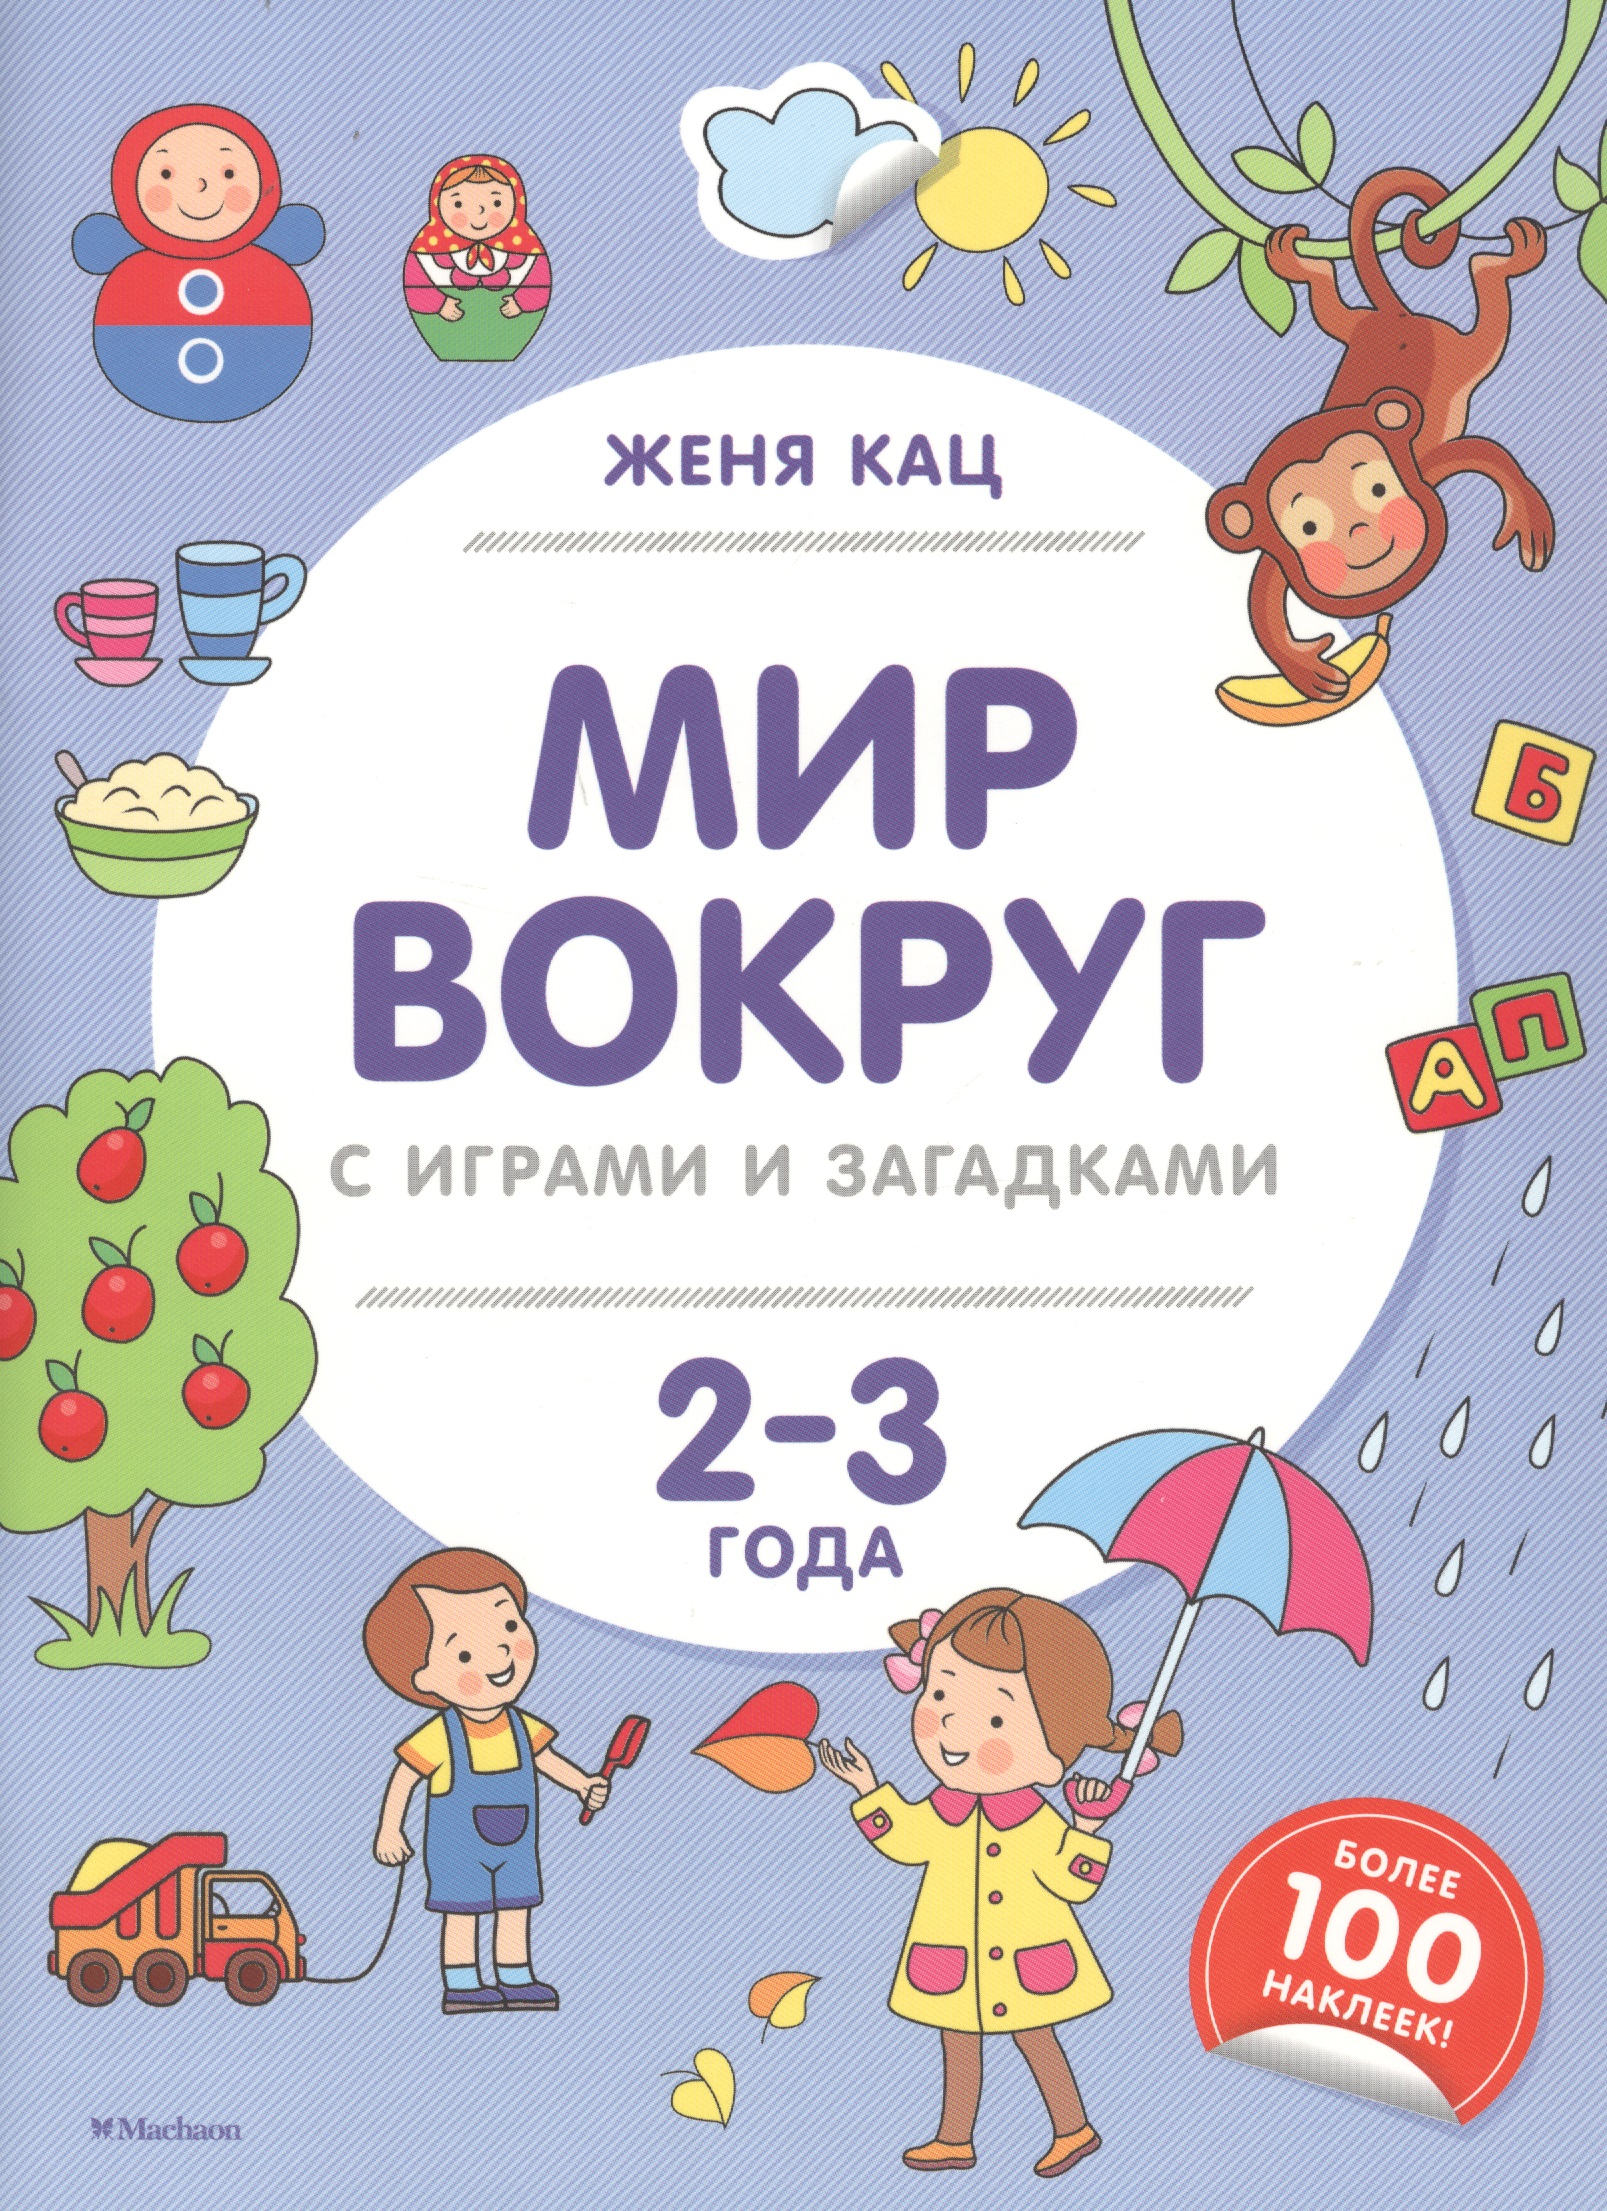 Кац Евгения Марковна Мир вокруг с играми и загадками. 2-3 года кац женя игрушечные рассказы